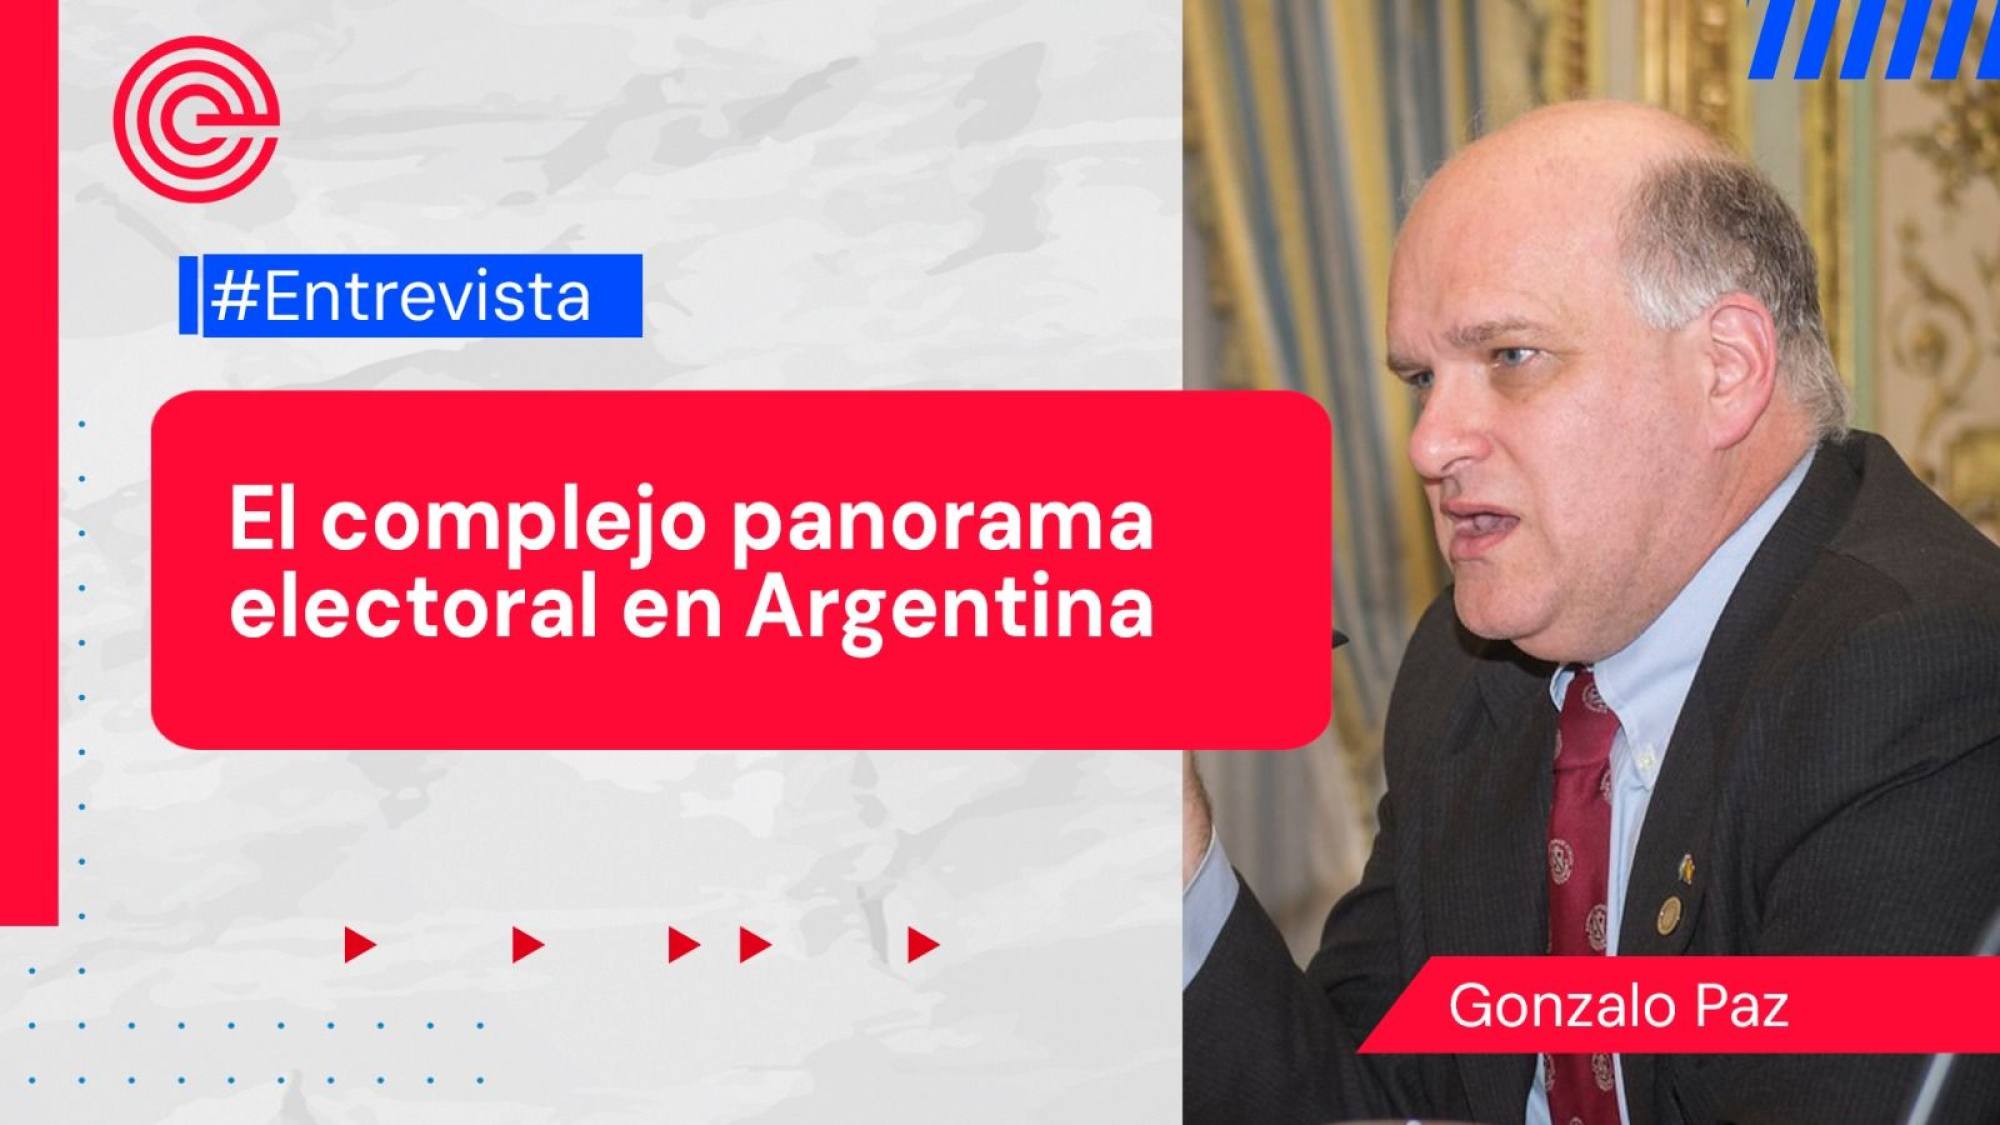 Para entender el complejo panorama electoral en Argentina, Epicentro TV